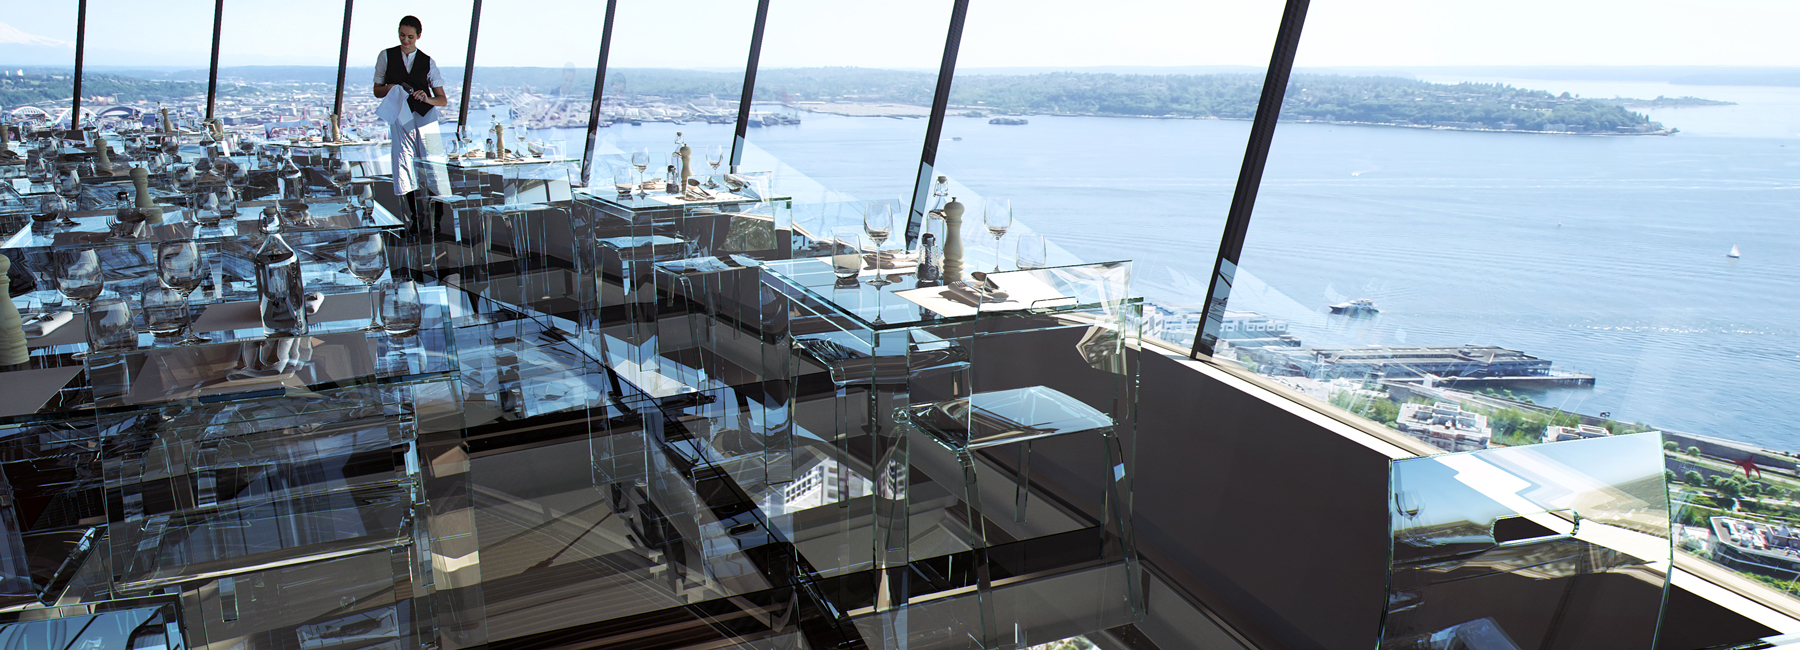 بازطراحی یک رستوران شیشه ای در ارتفاع 500 فوتی زمین